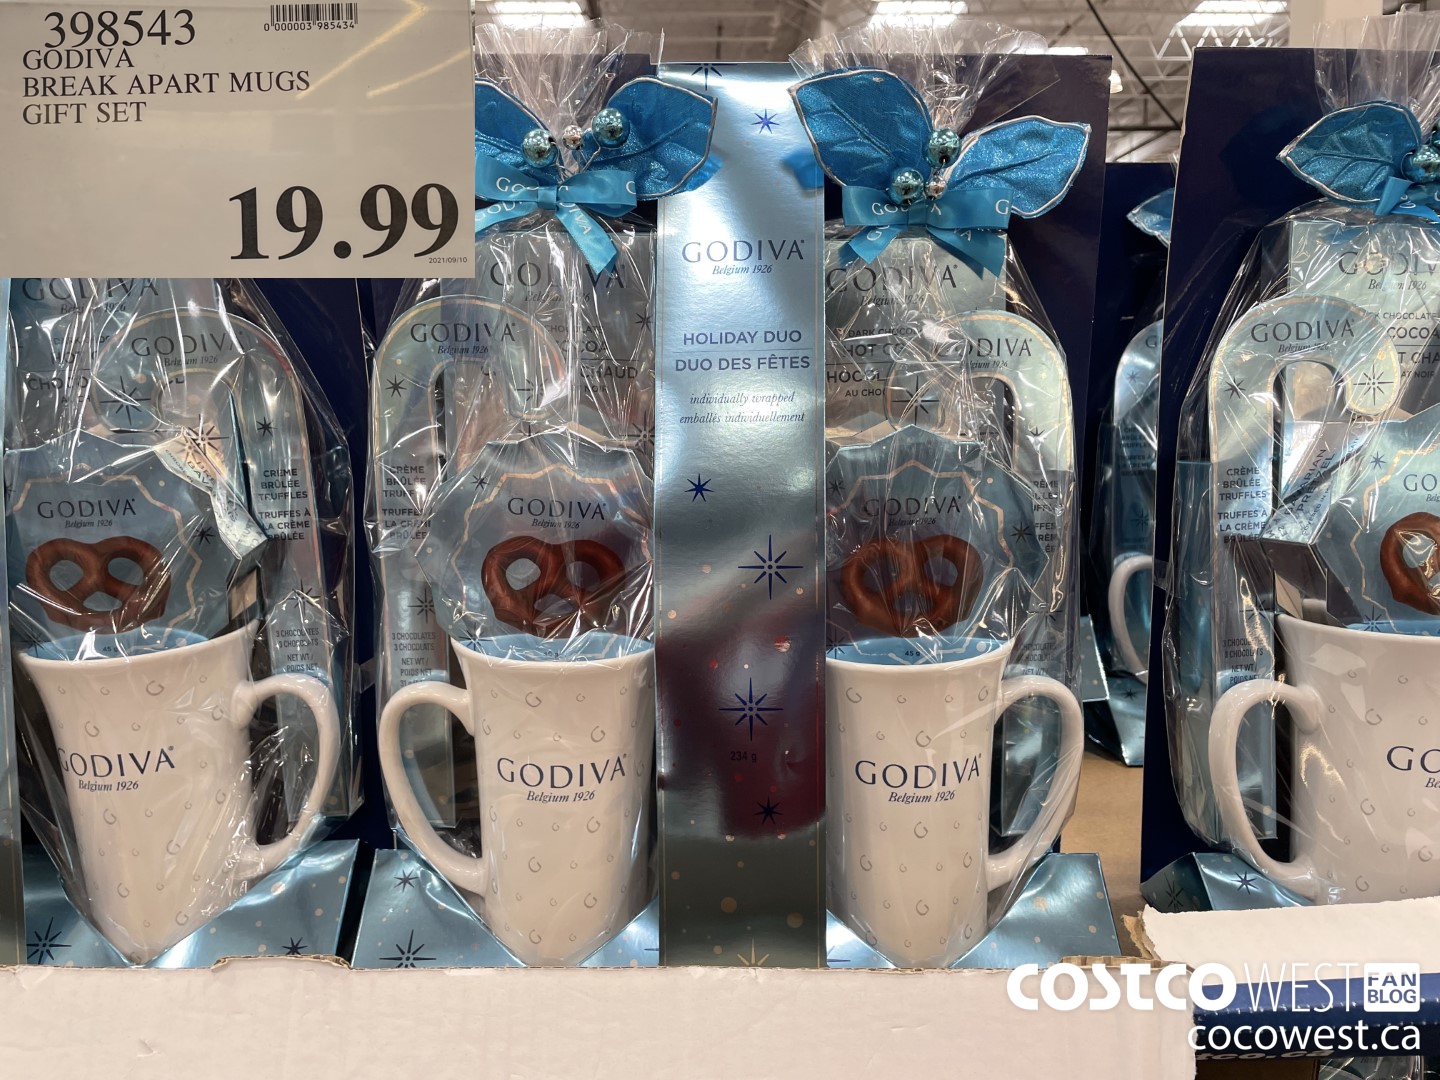 🎄 Holiday Mug Gift Sets at Costco! Each set comes with 4 holiday